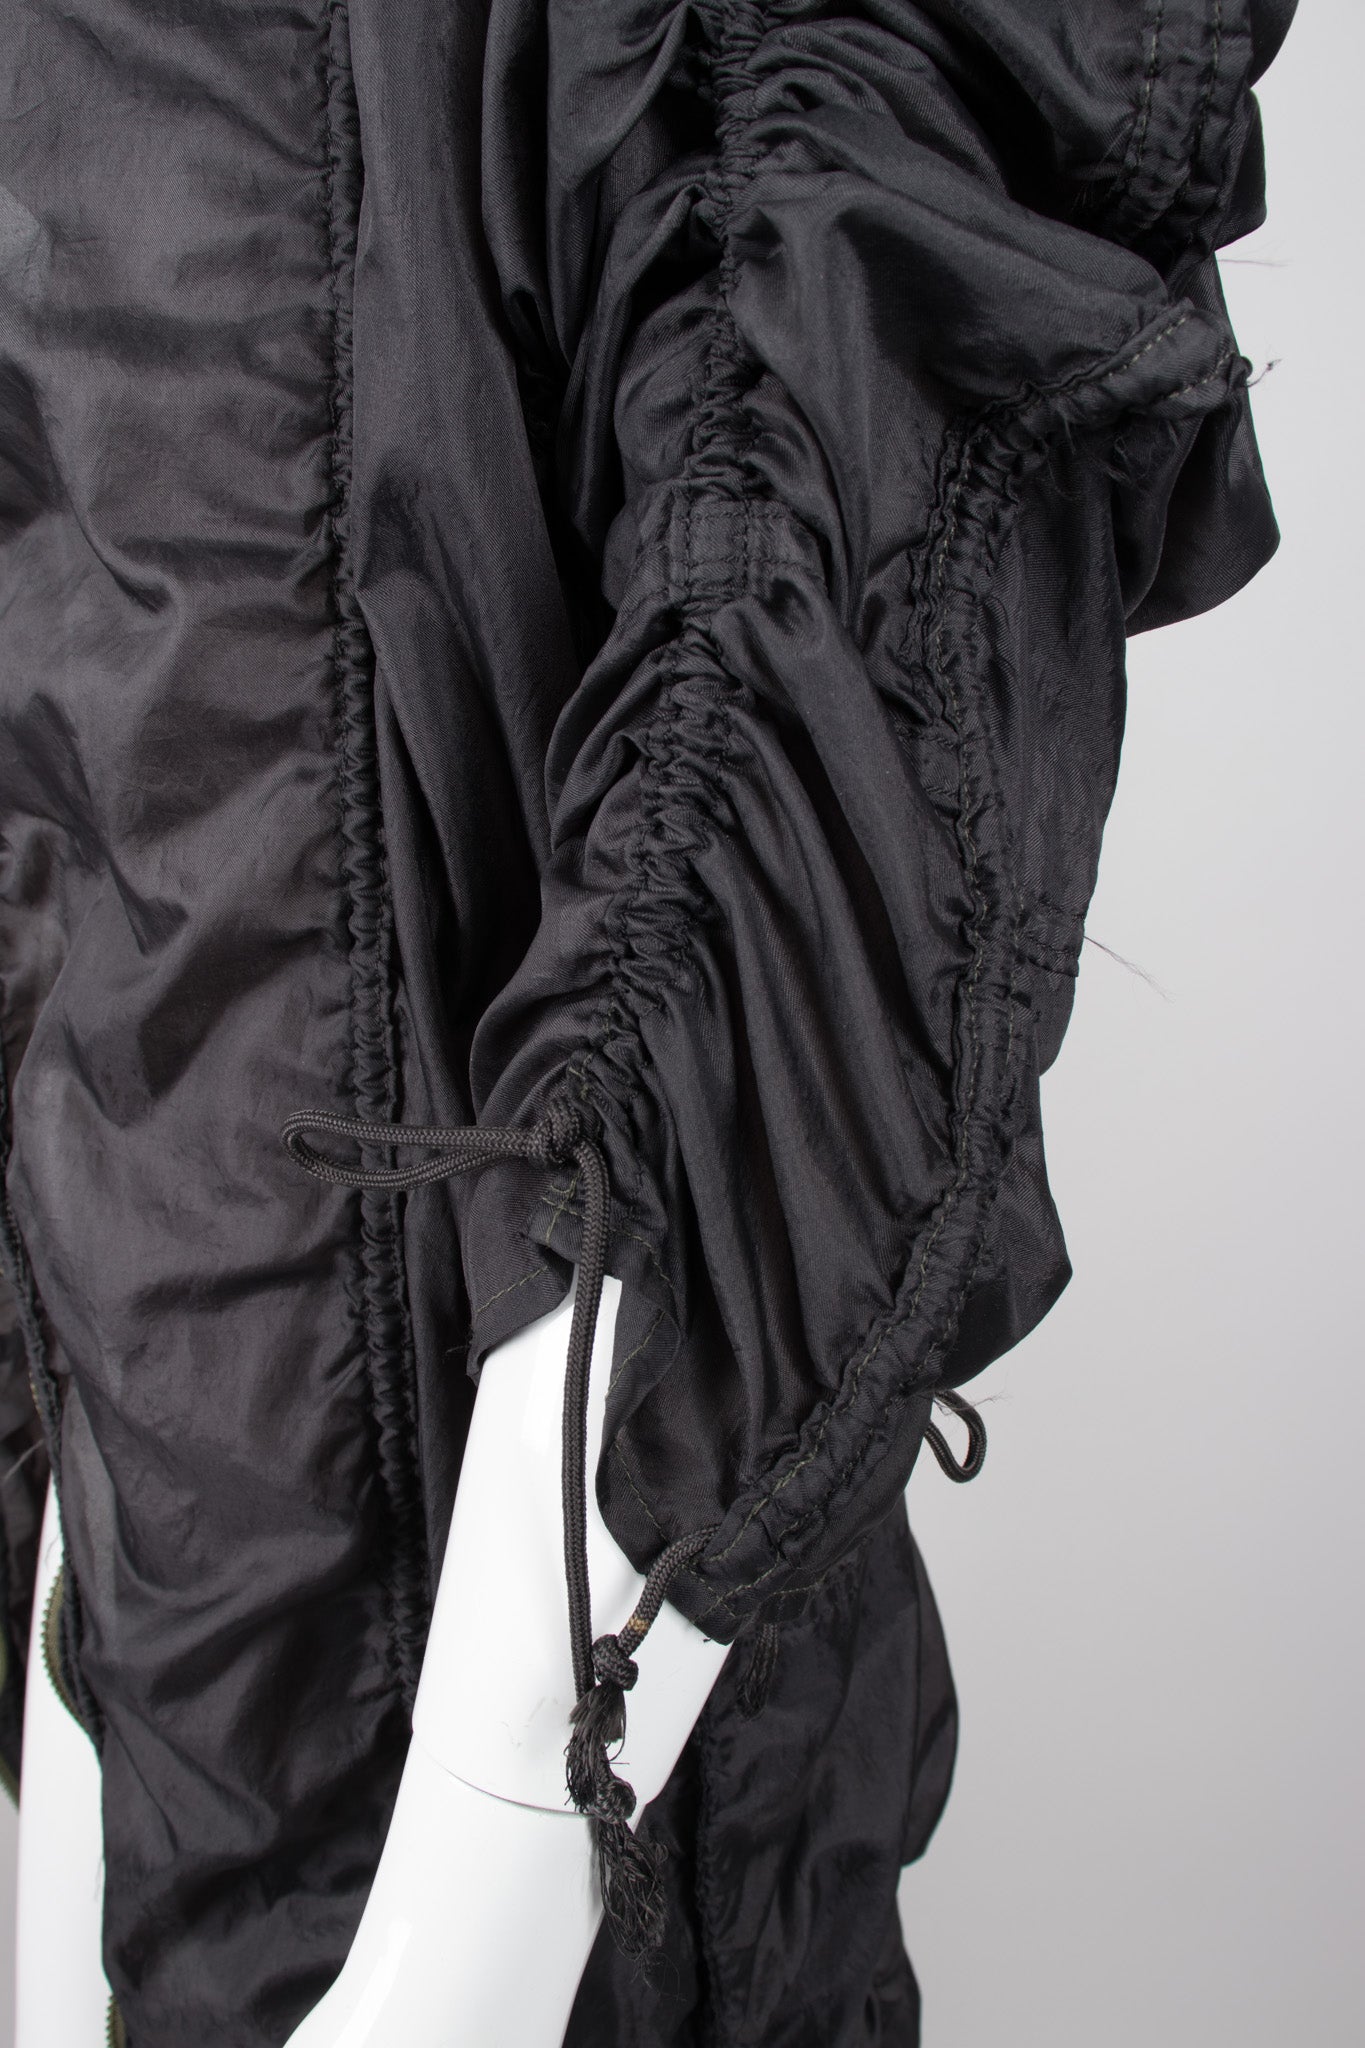 Norma Kamali OMO Rare Iconic Black Parachute Jacket Coat